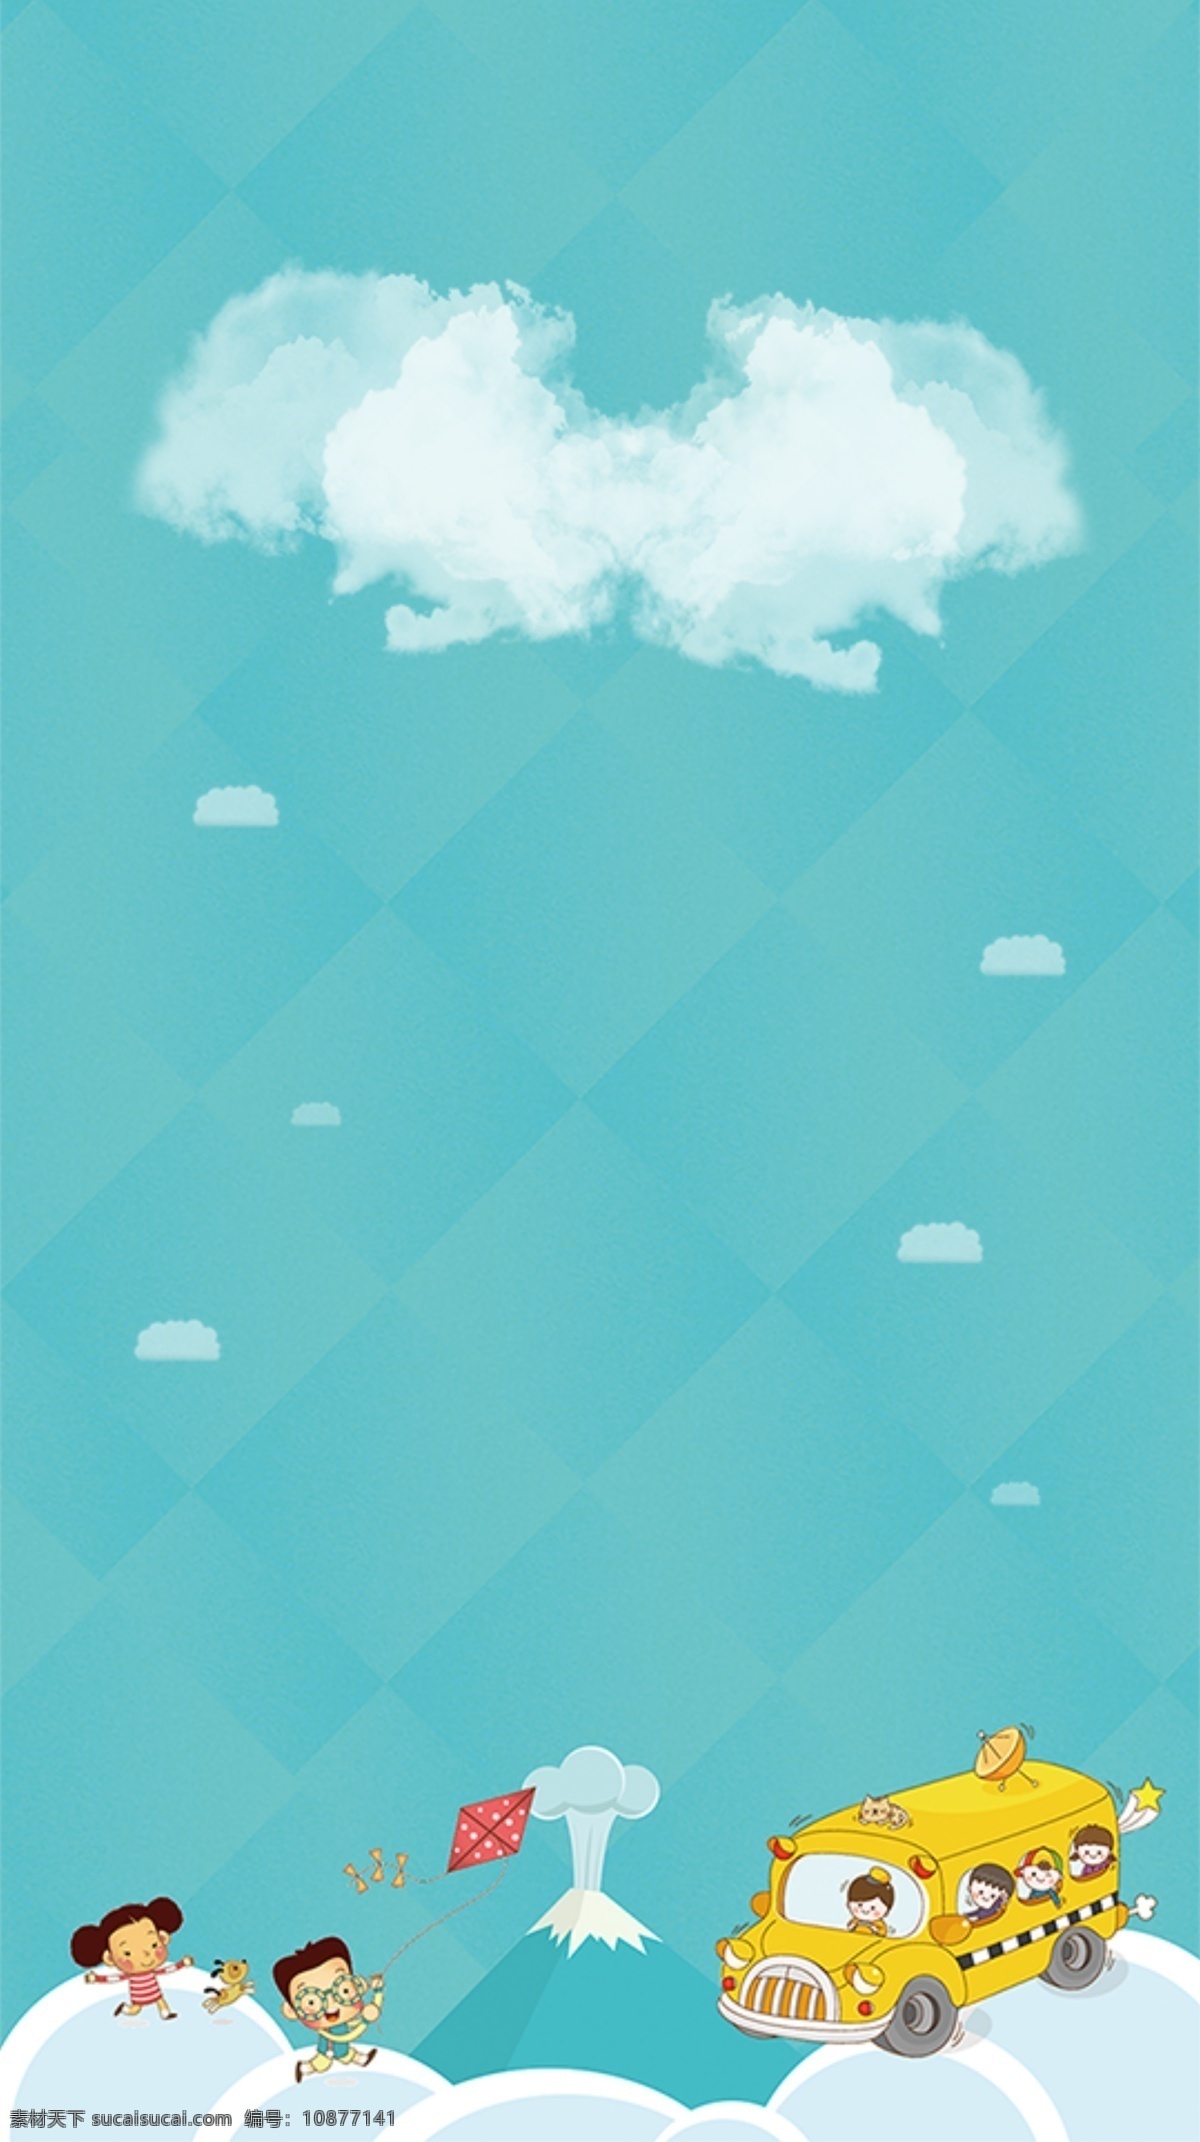 蓝色 海报 背景 模板 卡通 儿童画 云朵 动漫动画 风景漫画